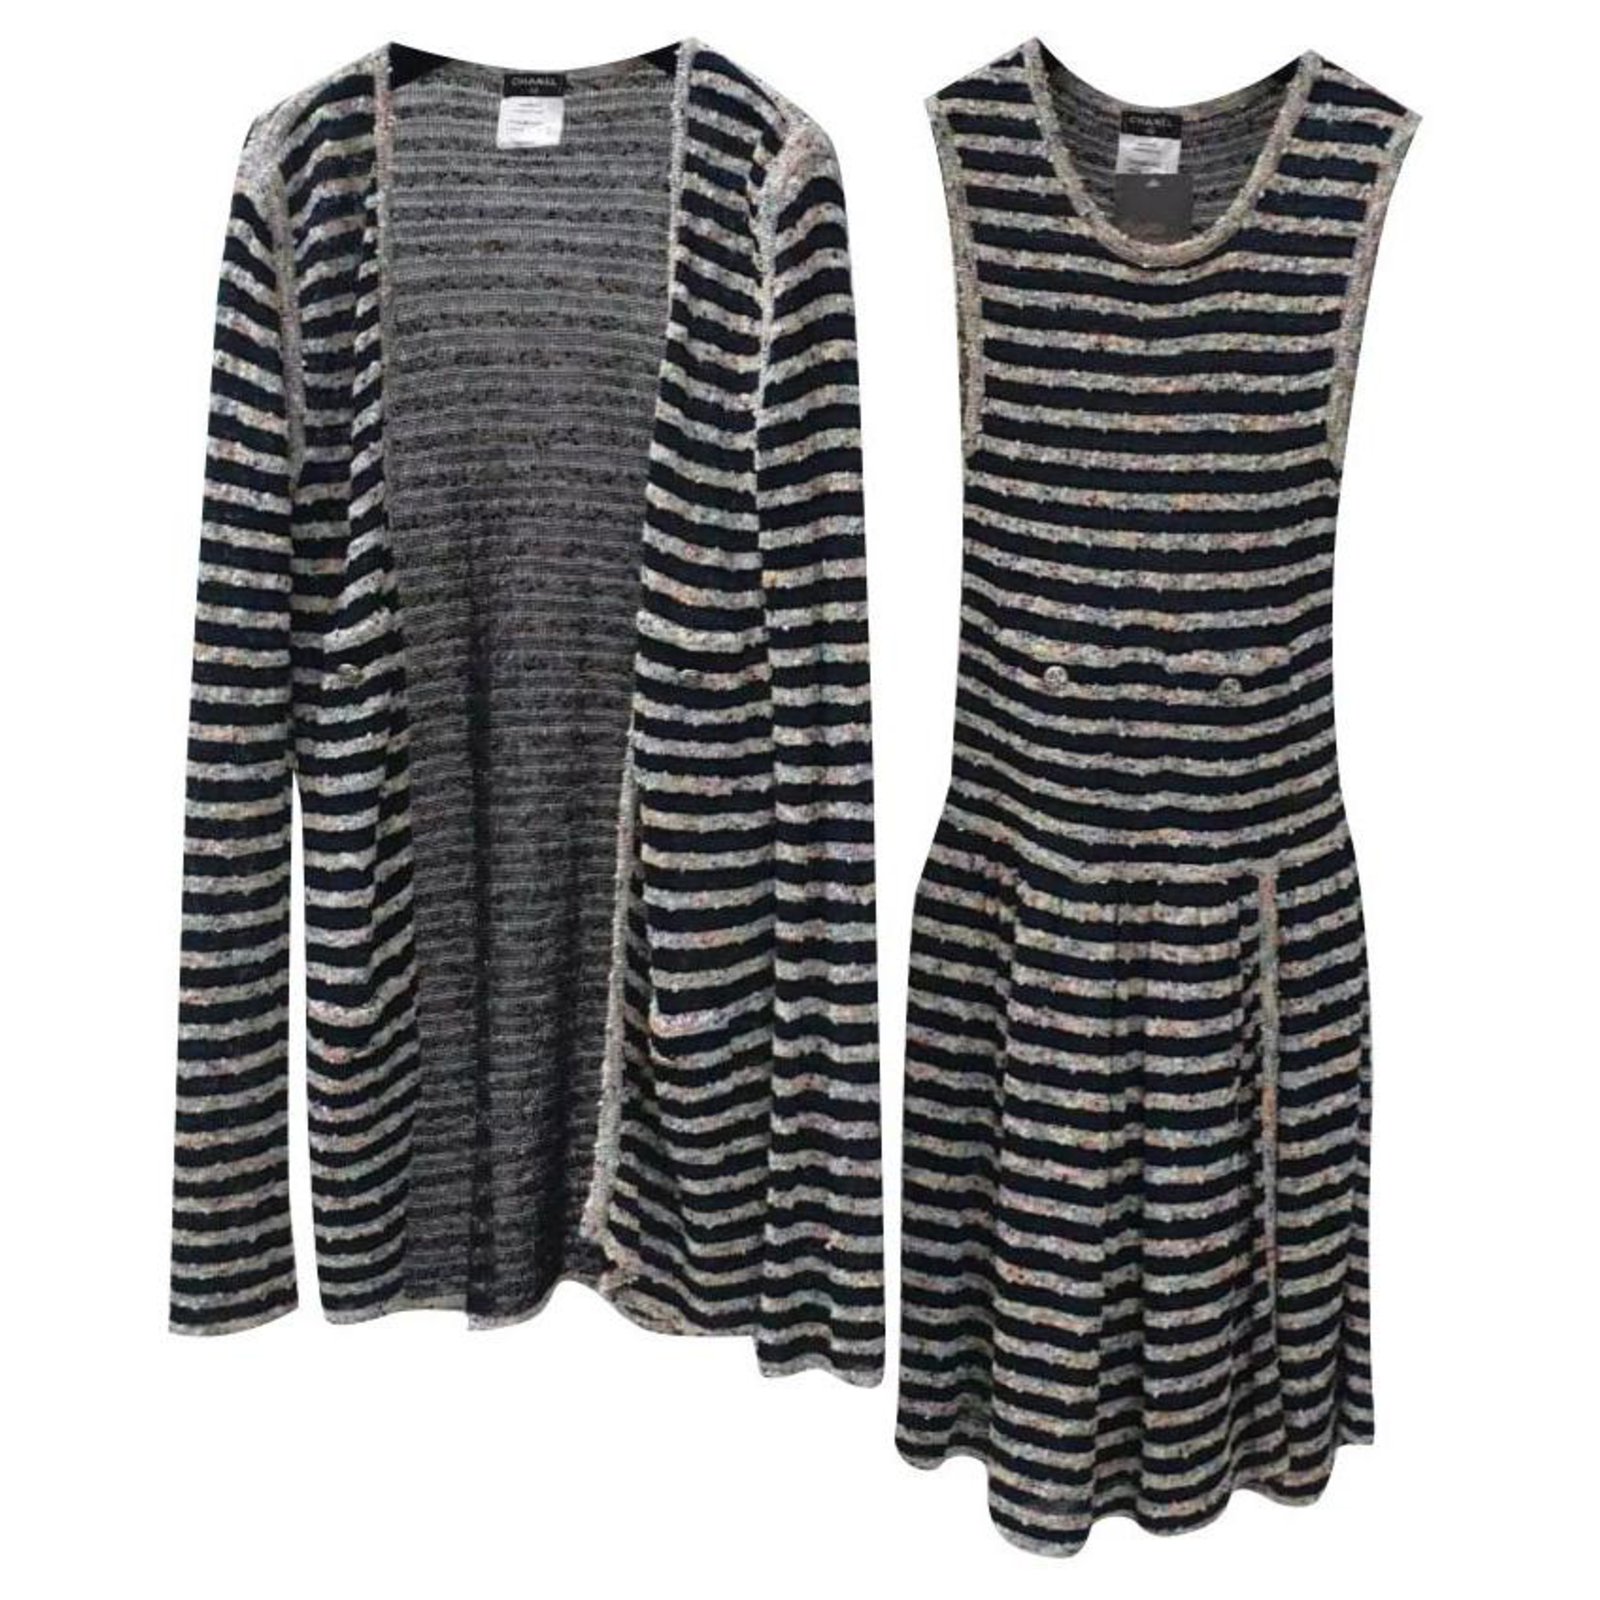 Chanel Striped Knit Tweed Dress Suit Set Sz.34, 36 Multiple colors